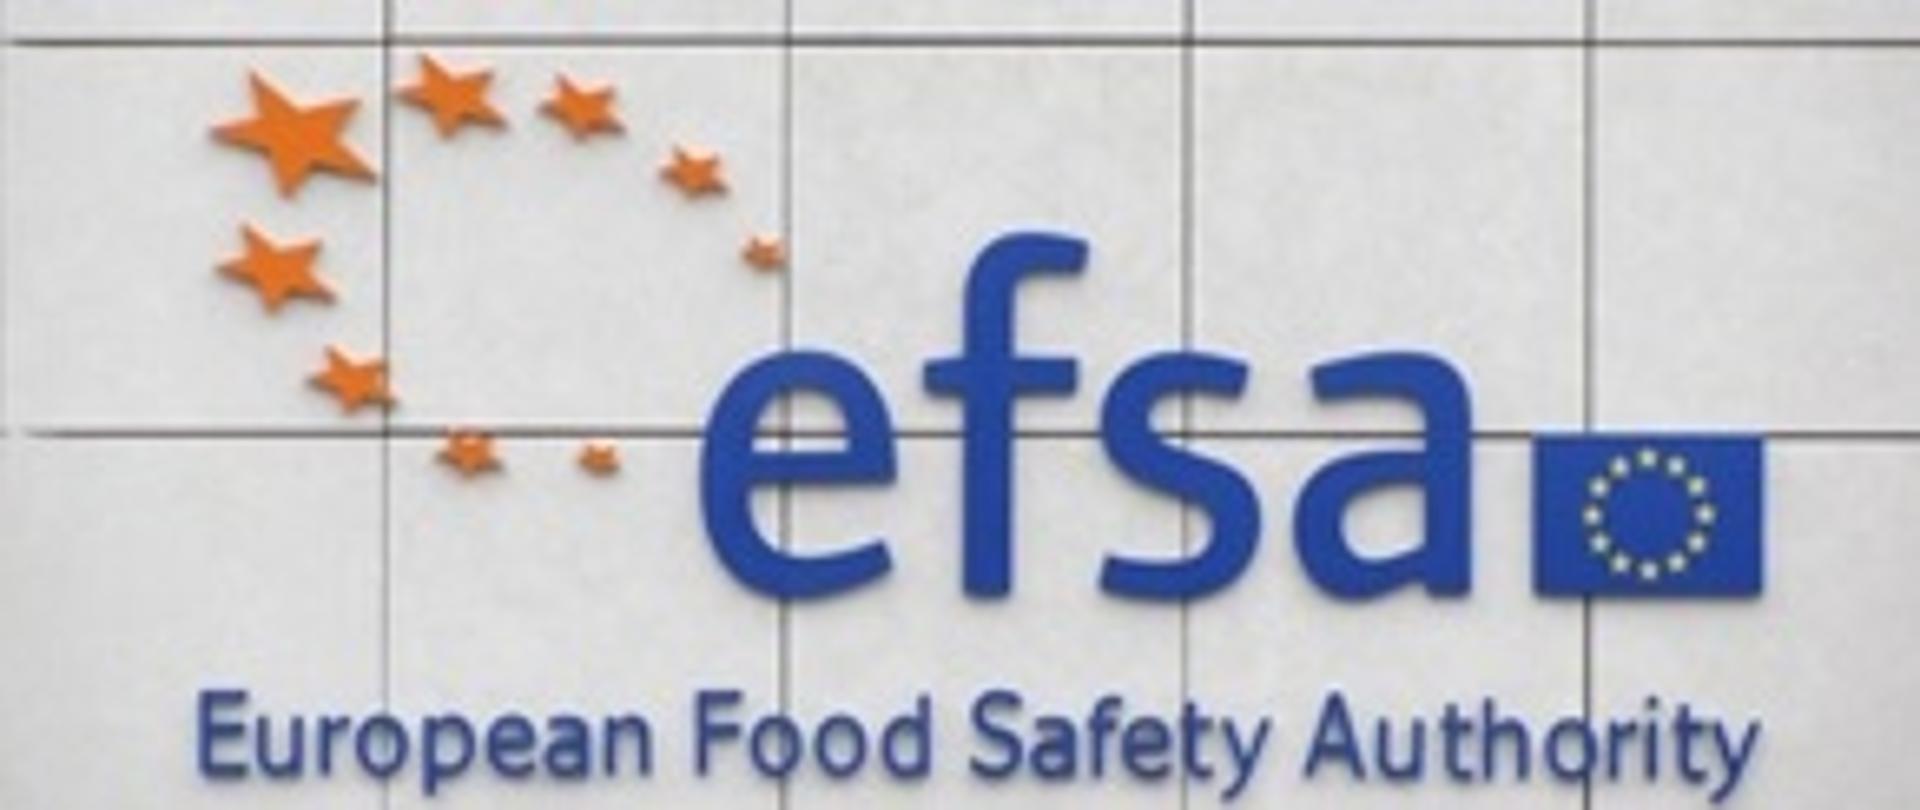 Logo organizacji EFSA European Food Safety Authority. Na szrym tle w fomie kafelek napis sfsa - po prawej na wyskości litery a - flaga uE.
Pod nią napis: European Food Safety Authority